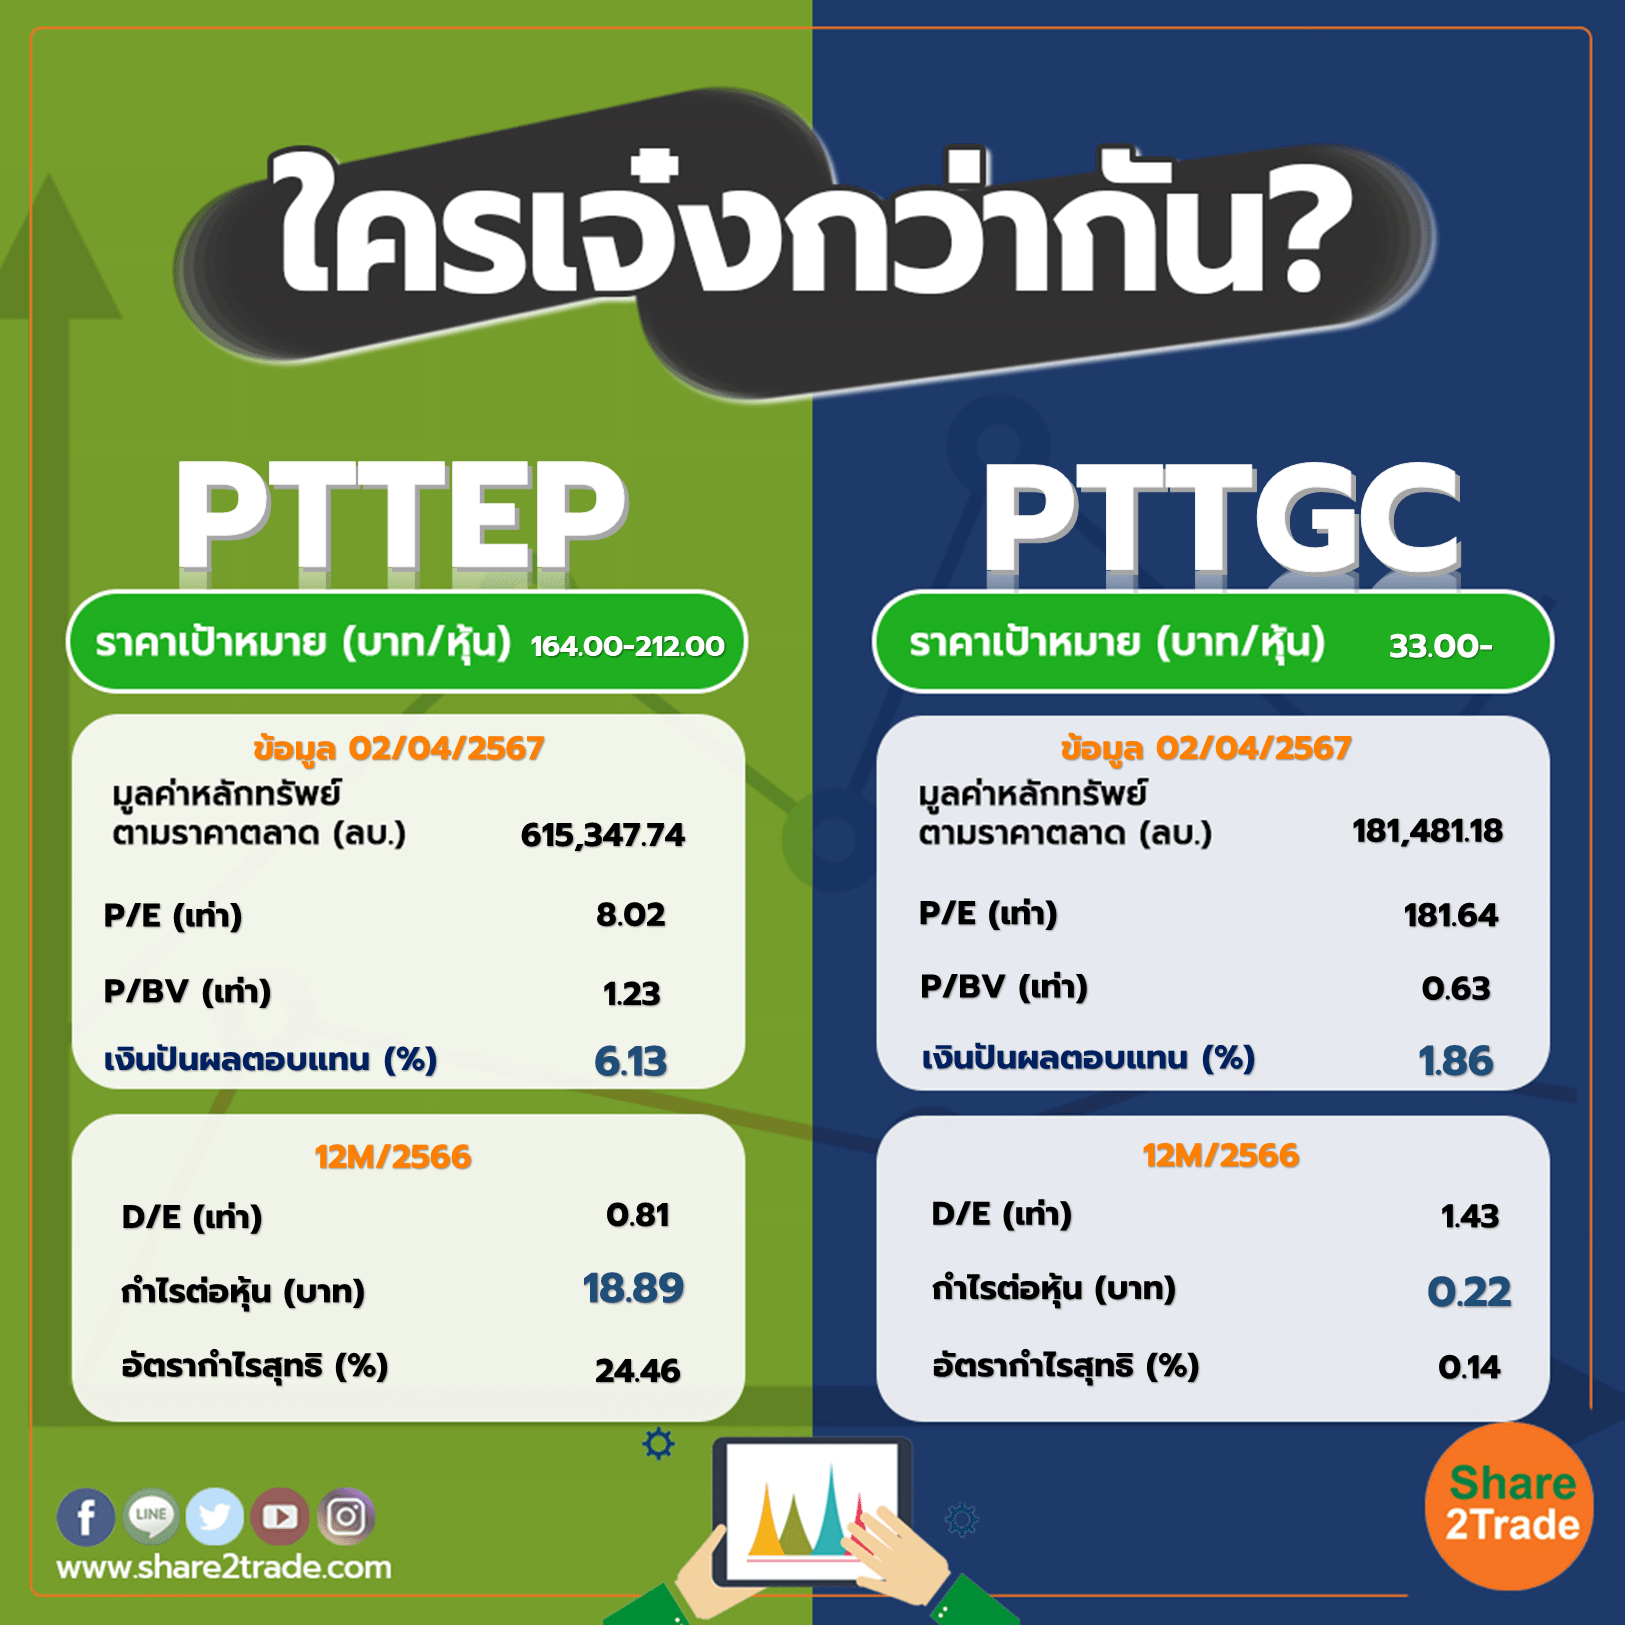 ใครเจ๋งกว่ากัน "PTTEP " VS "PTTGC"